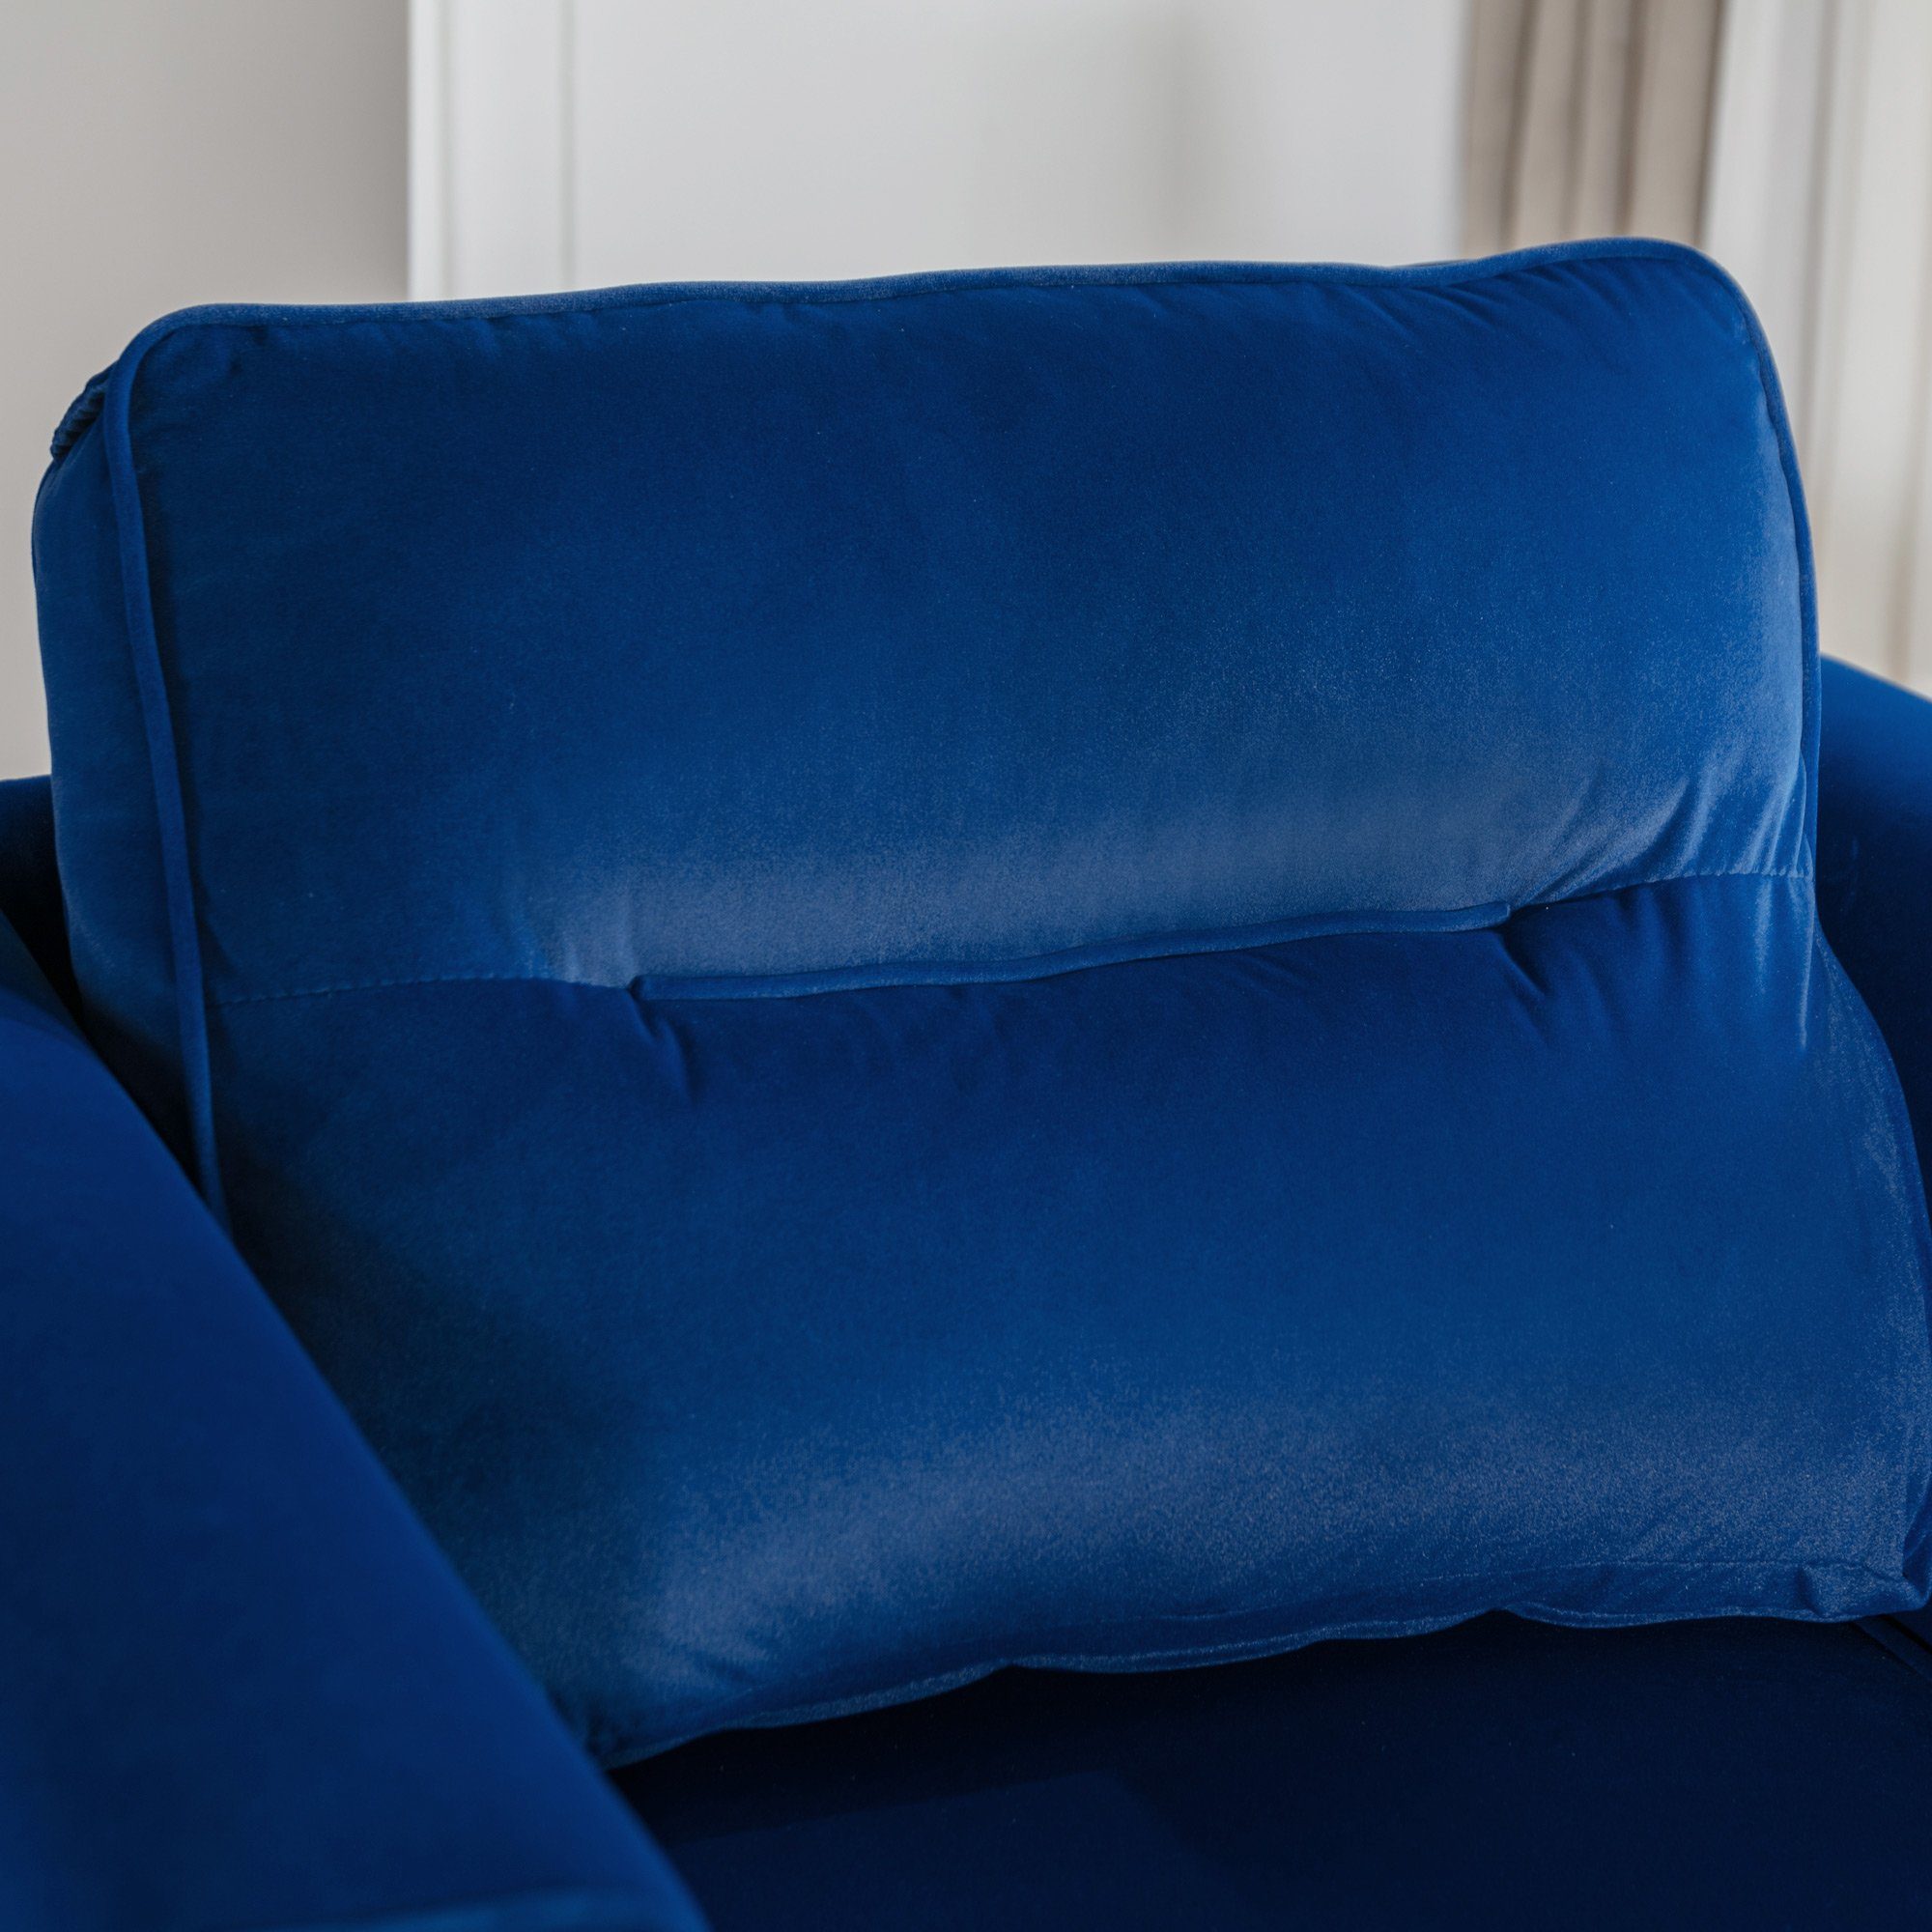 lässiger Polster Loungesessel, einfacher REDOM Sessel und Sessel, Roségold-Metallbeine Sitzkissen blau Fernsehsessel, (moderner Sessel mit Samtstuhl),